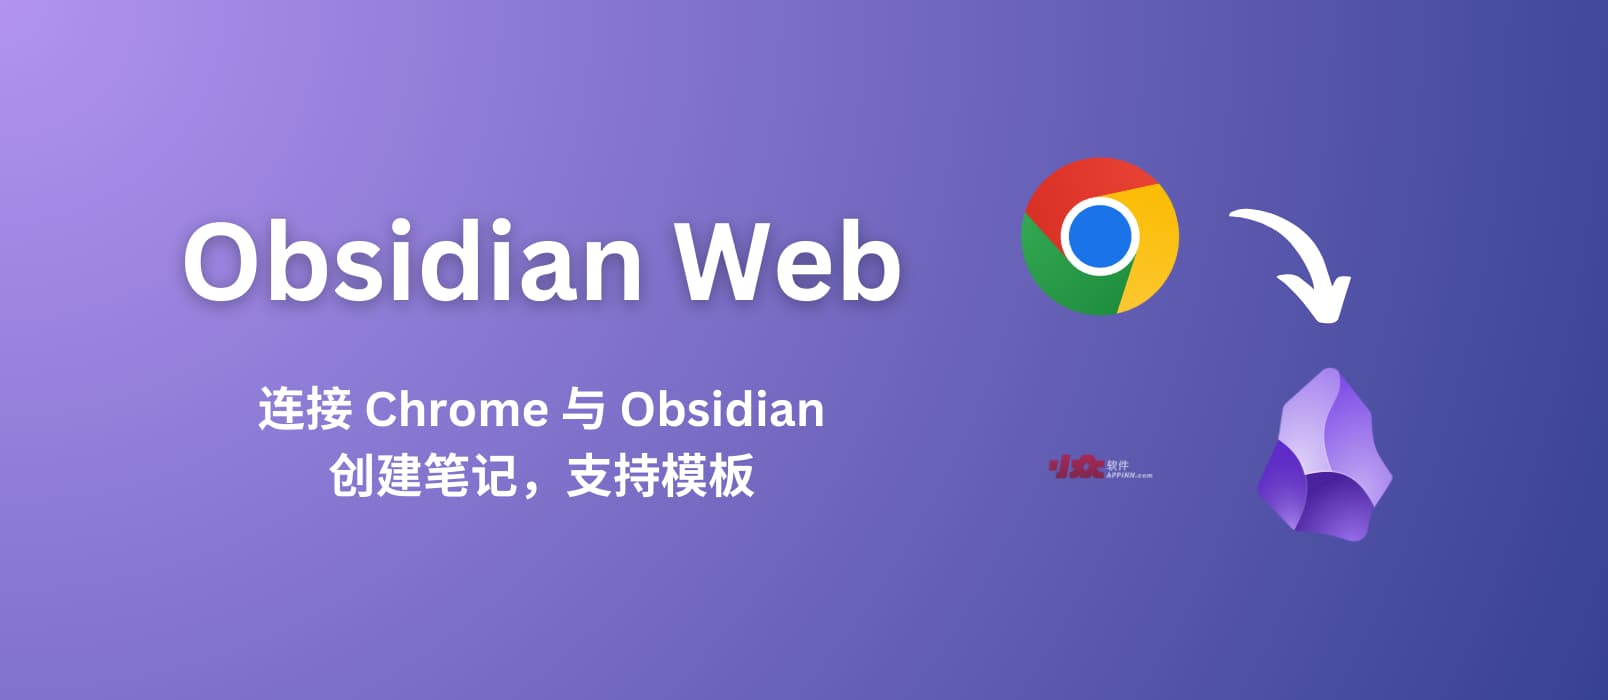 Obsidian Web – 连接 Chrome 与 Obsidian，从网页创建笔记，支持自定义模板